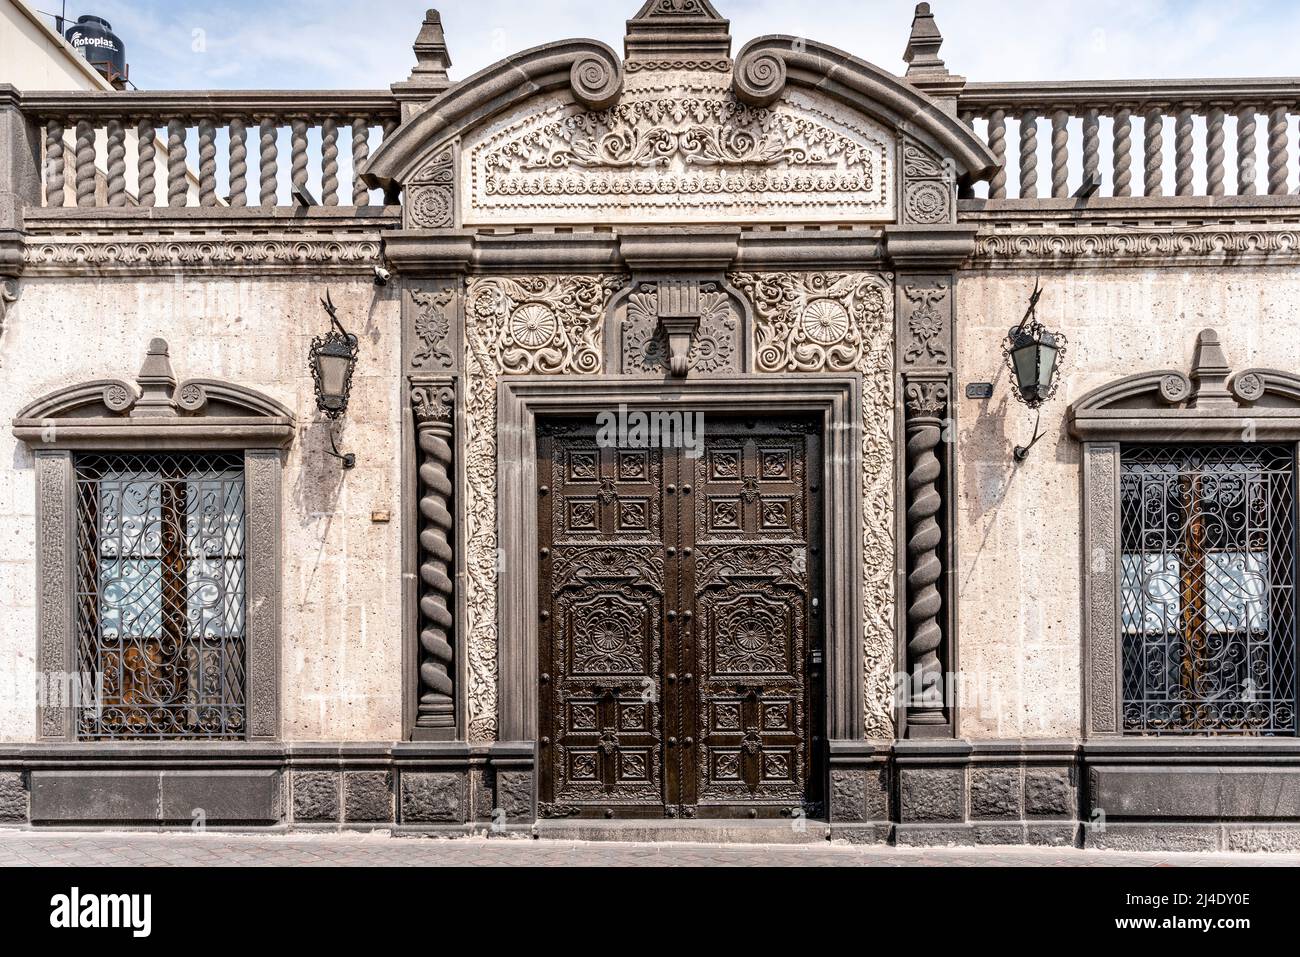 Architecture typique en pierre blanche dans le centre historique de la ville, Arequipa, région d'Arequipa, Pérou. Banque D'Images